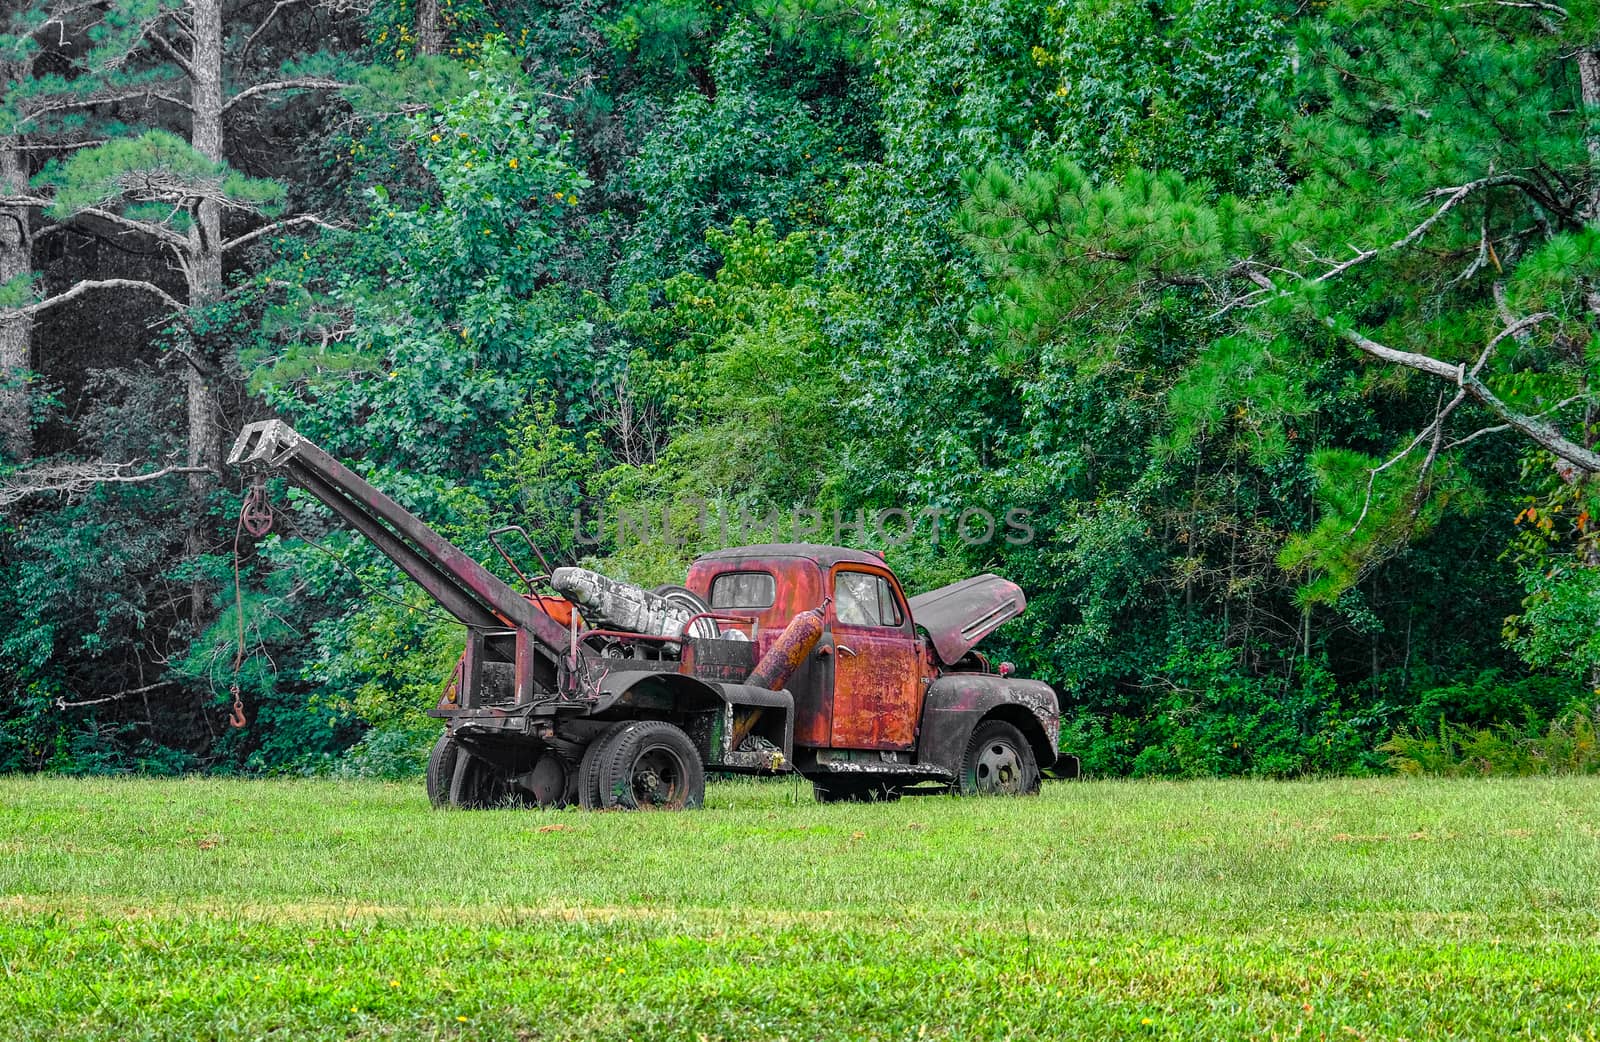 An Old Rusty Wrecker in Field Near Summer Woods